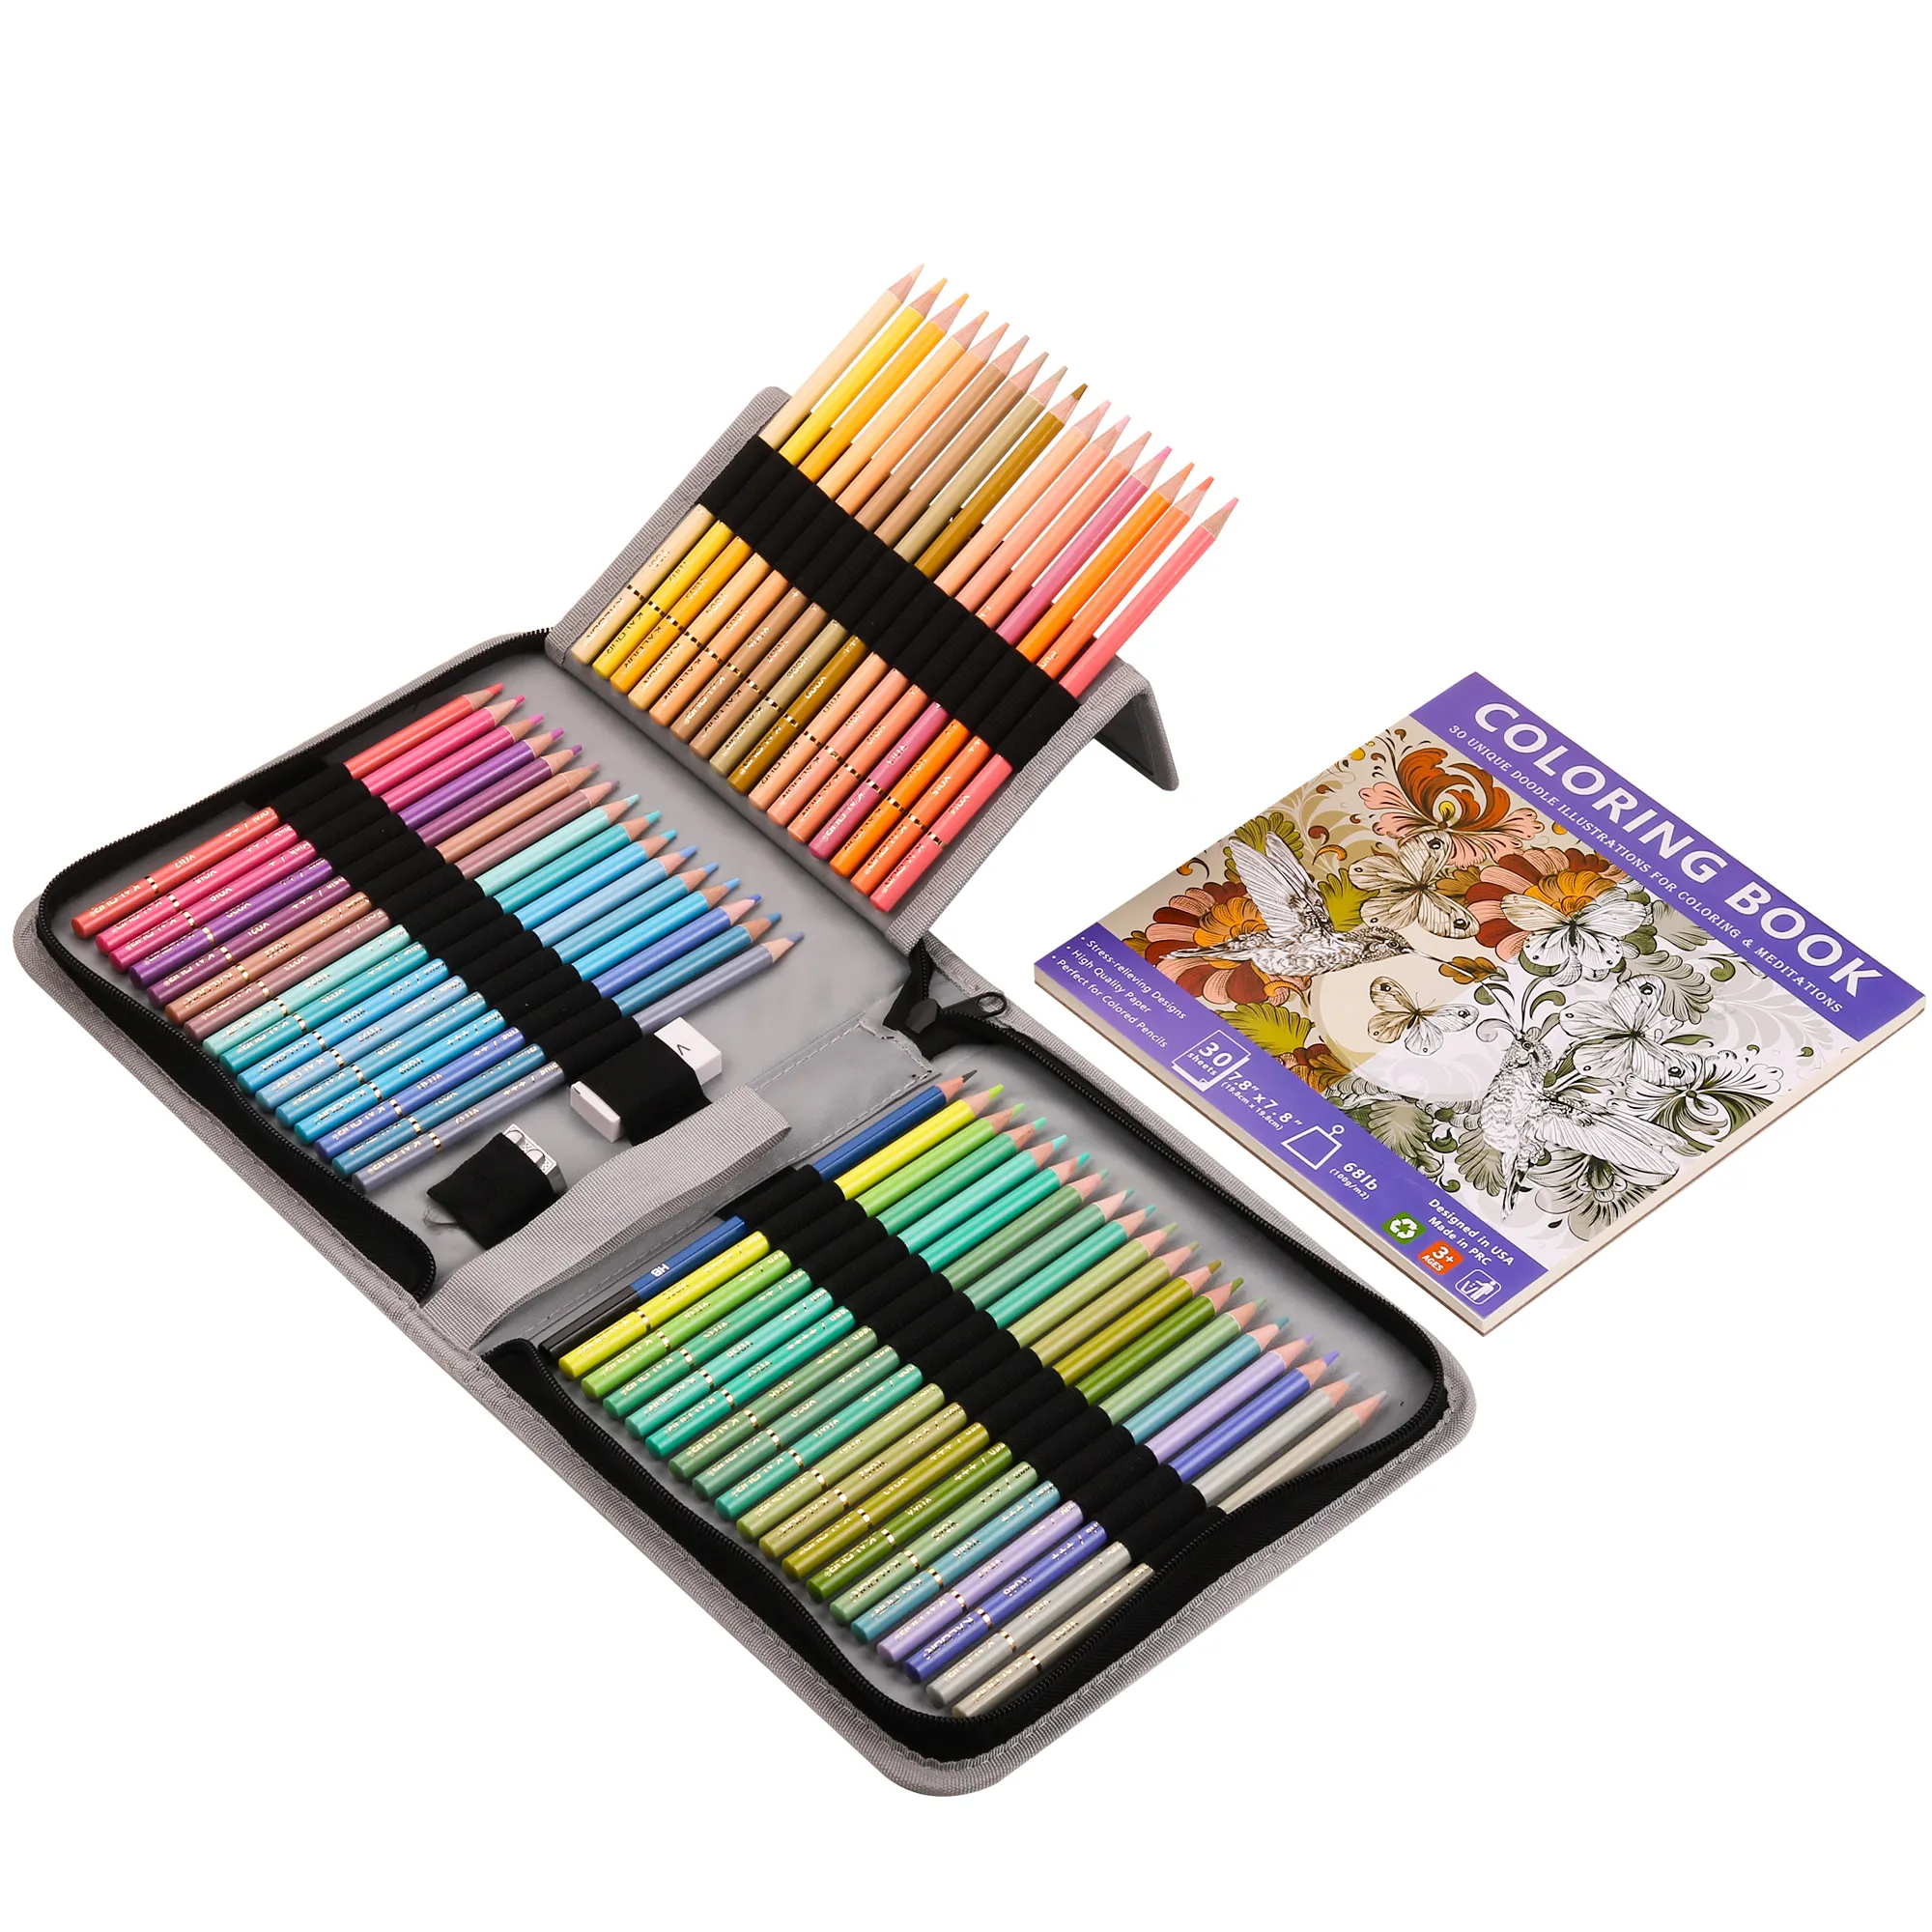 KALOUR ชุดดินสอสีมาการอง50ชิ้นแบบมืออาชีพ,ชุดดินสอสีมีซิปสำหรับวาดรูปอาร์ตสีสันสดใสและแกนหลักจำนวน55ชิ้น